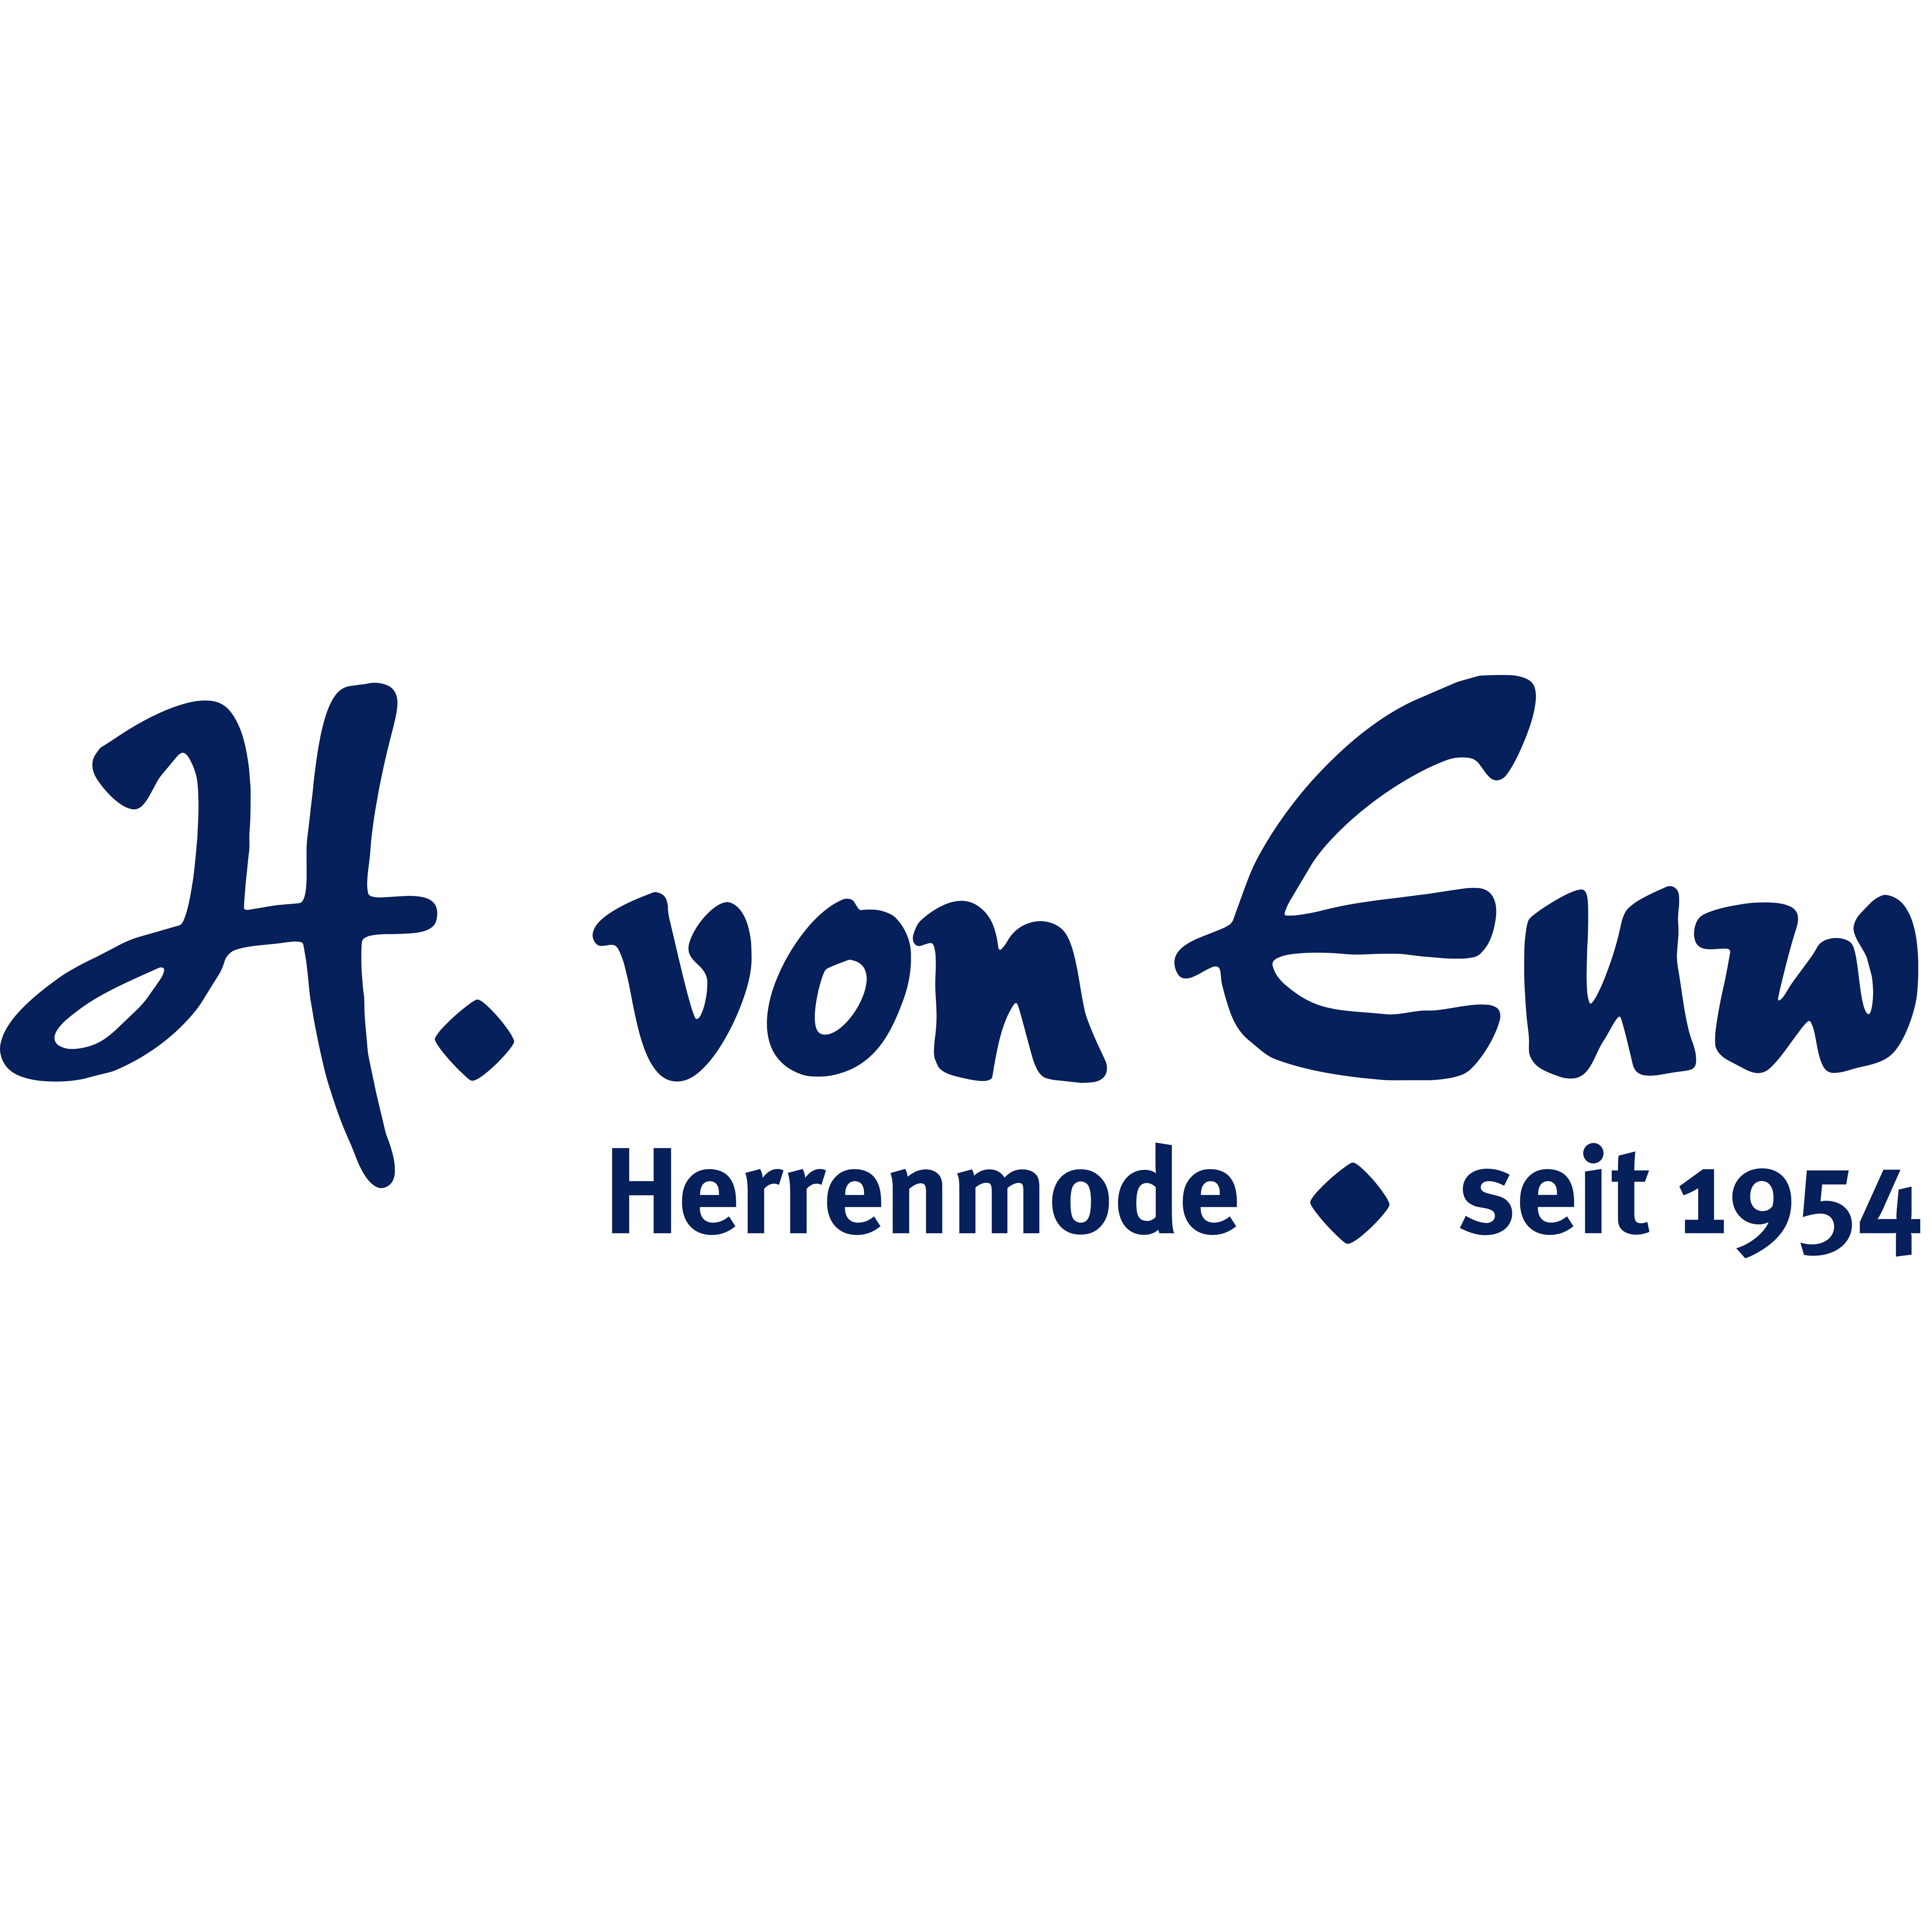 Herrenmode H. von Euw Logo